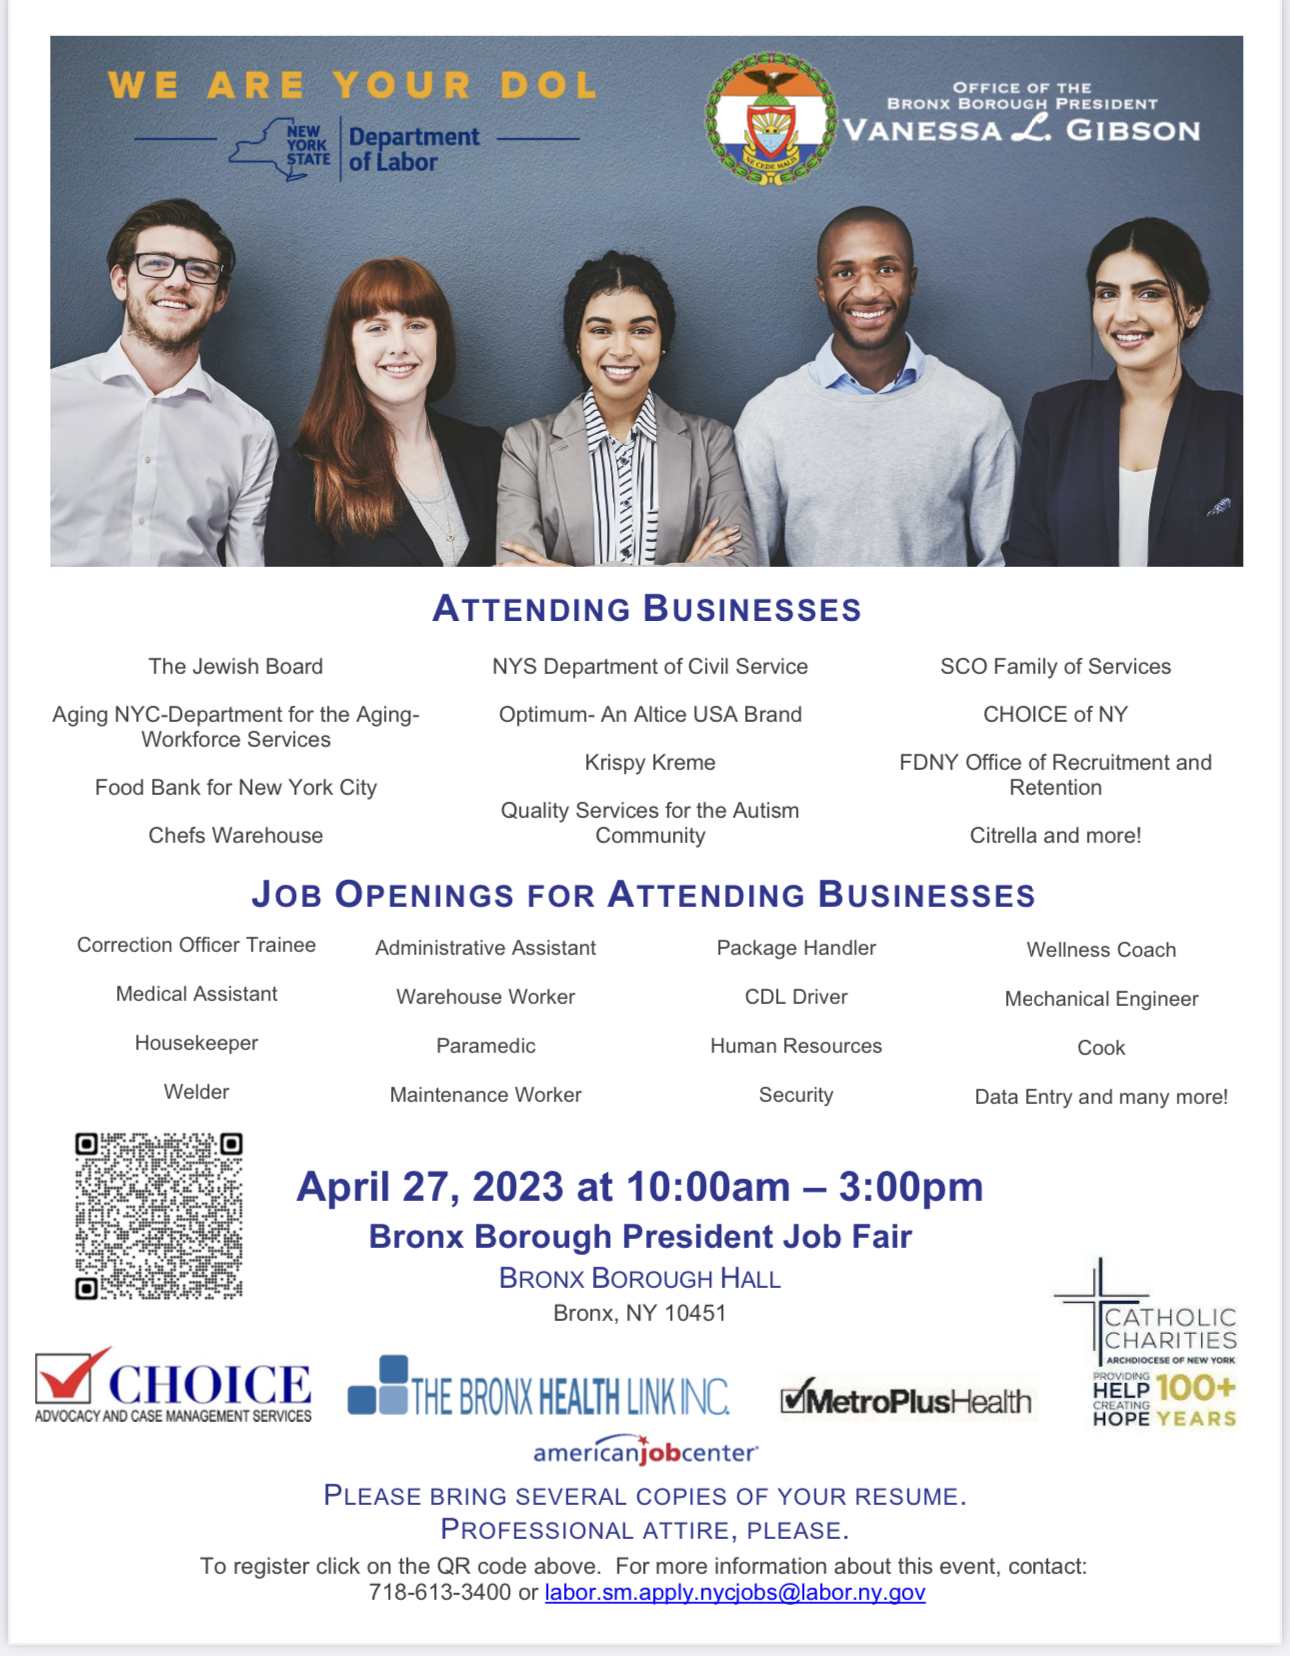 A flyer for a job fair on April 27, 2023.